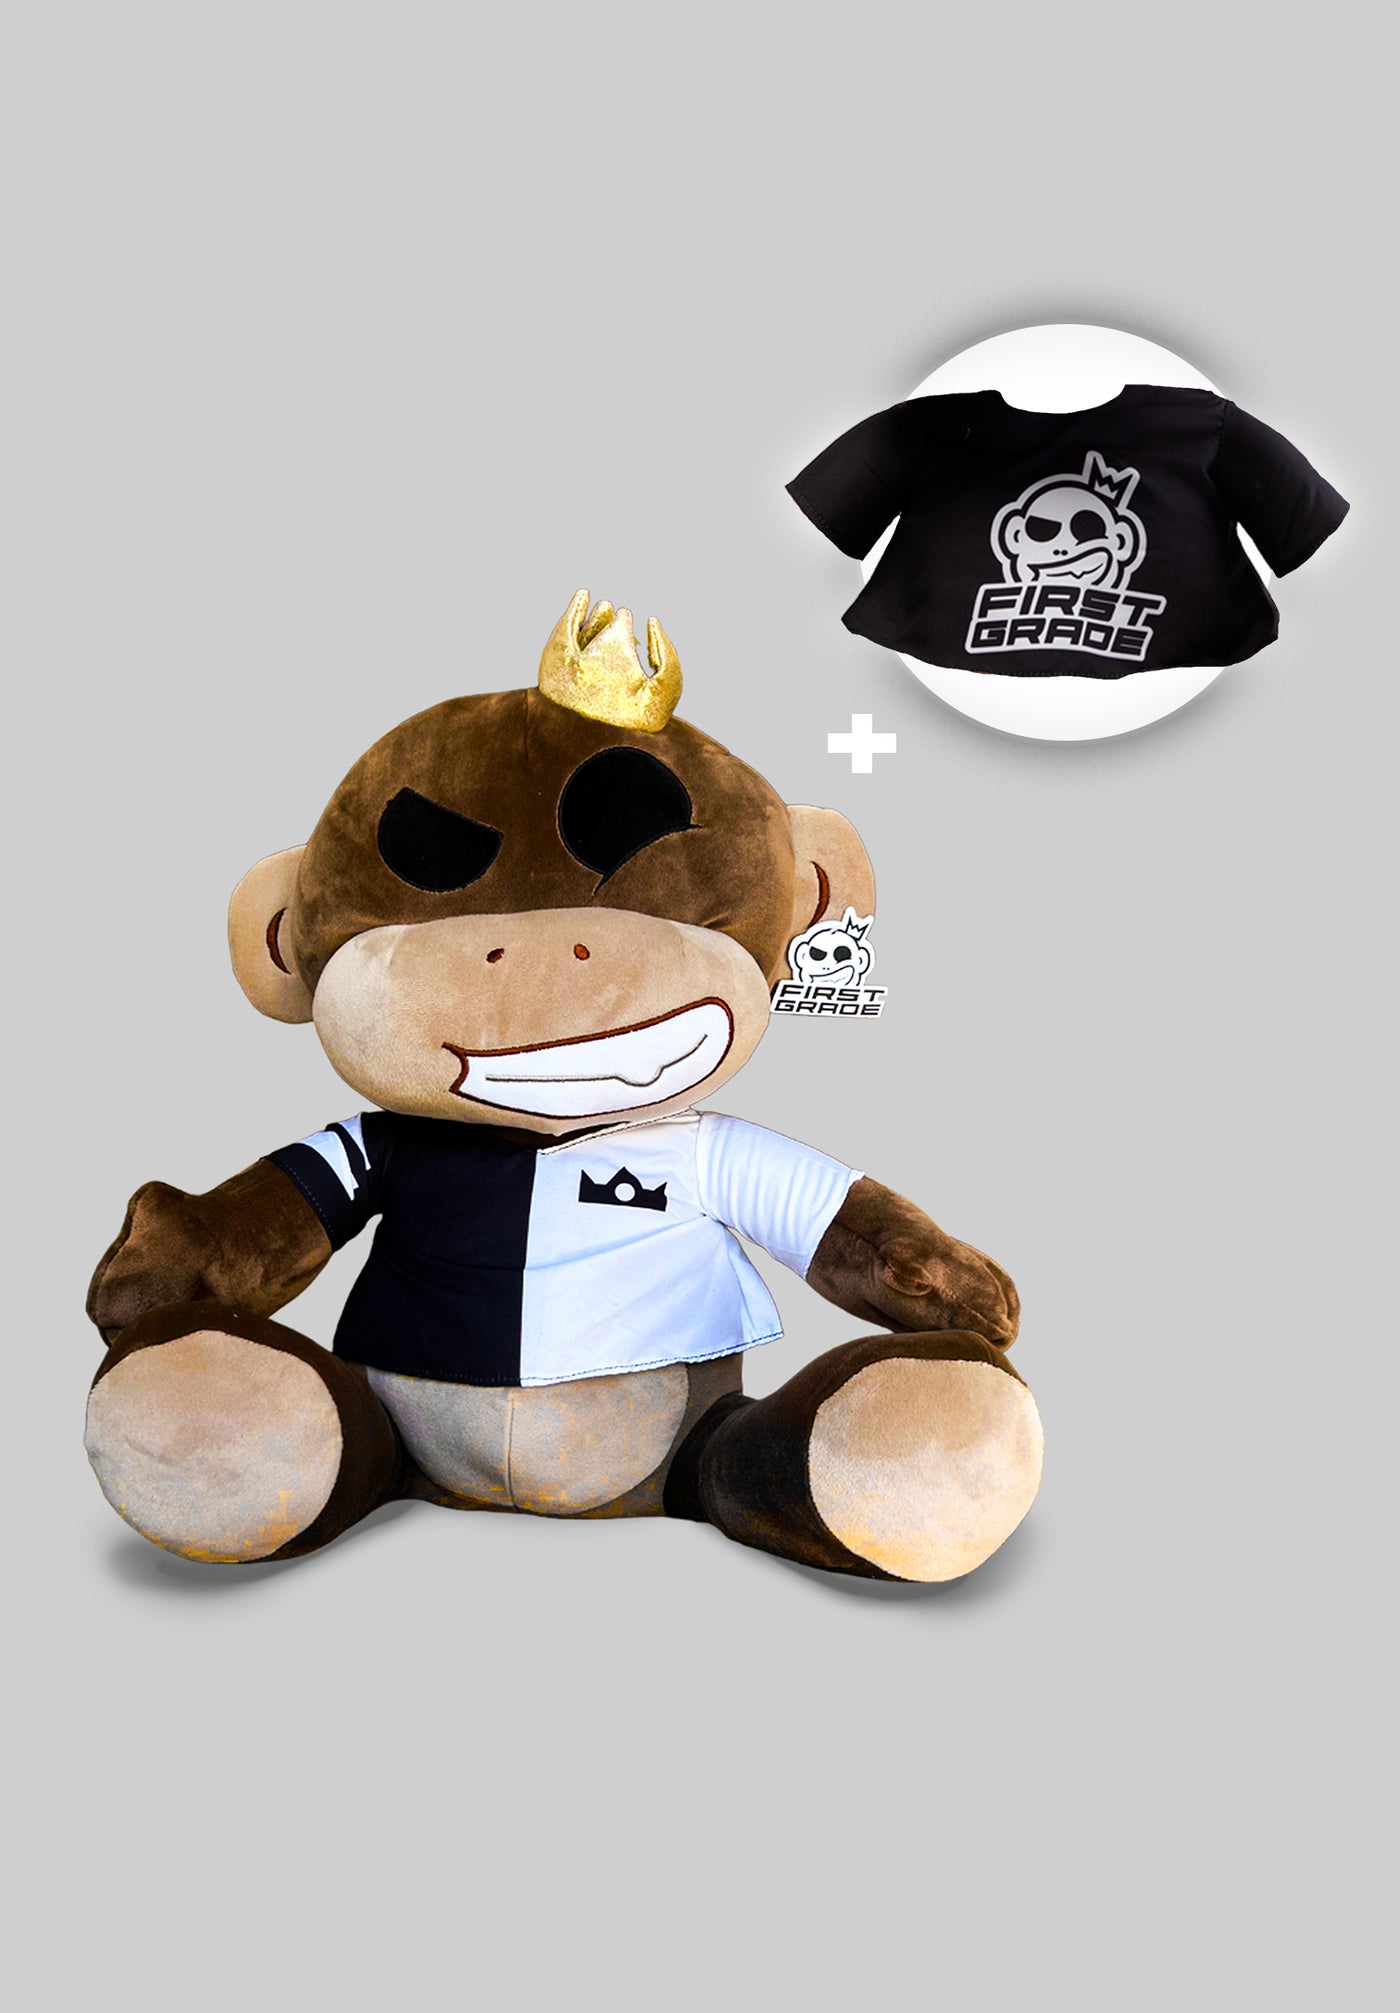 "Monkey" Bamse + prodigy t-shirt